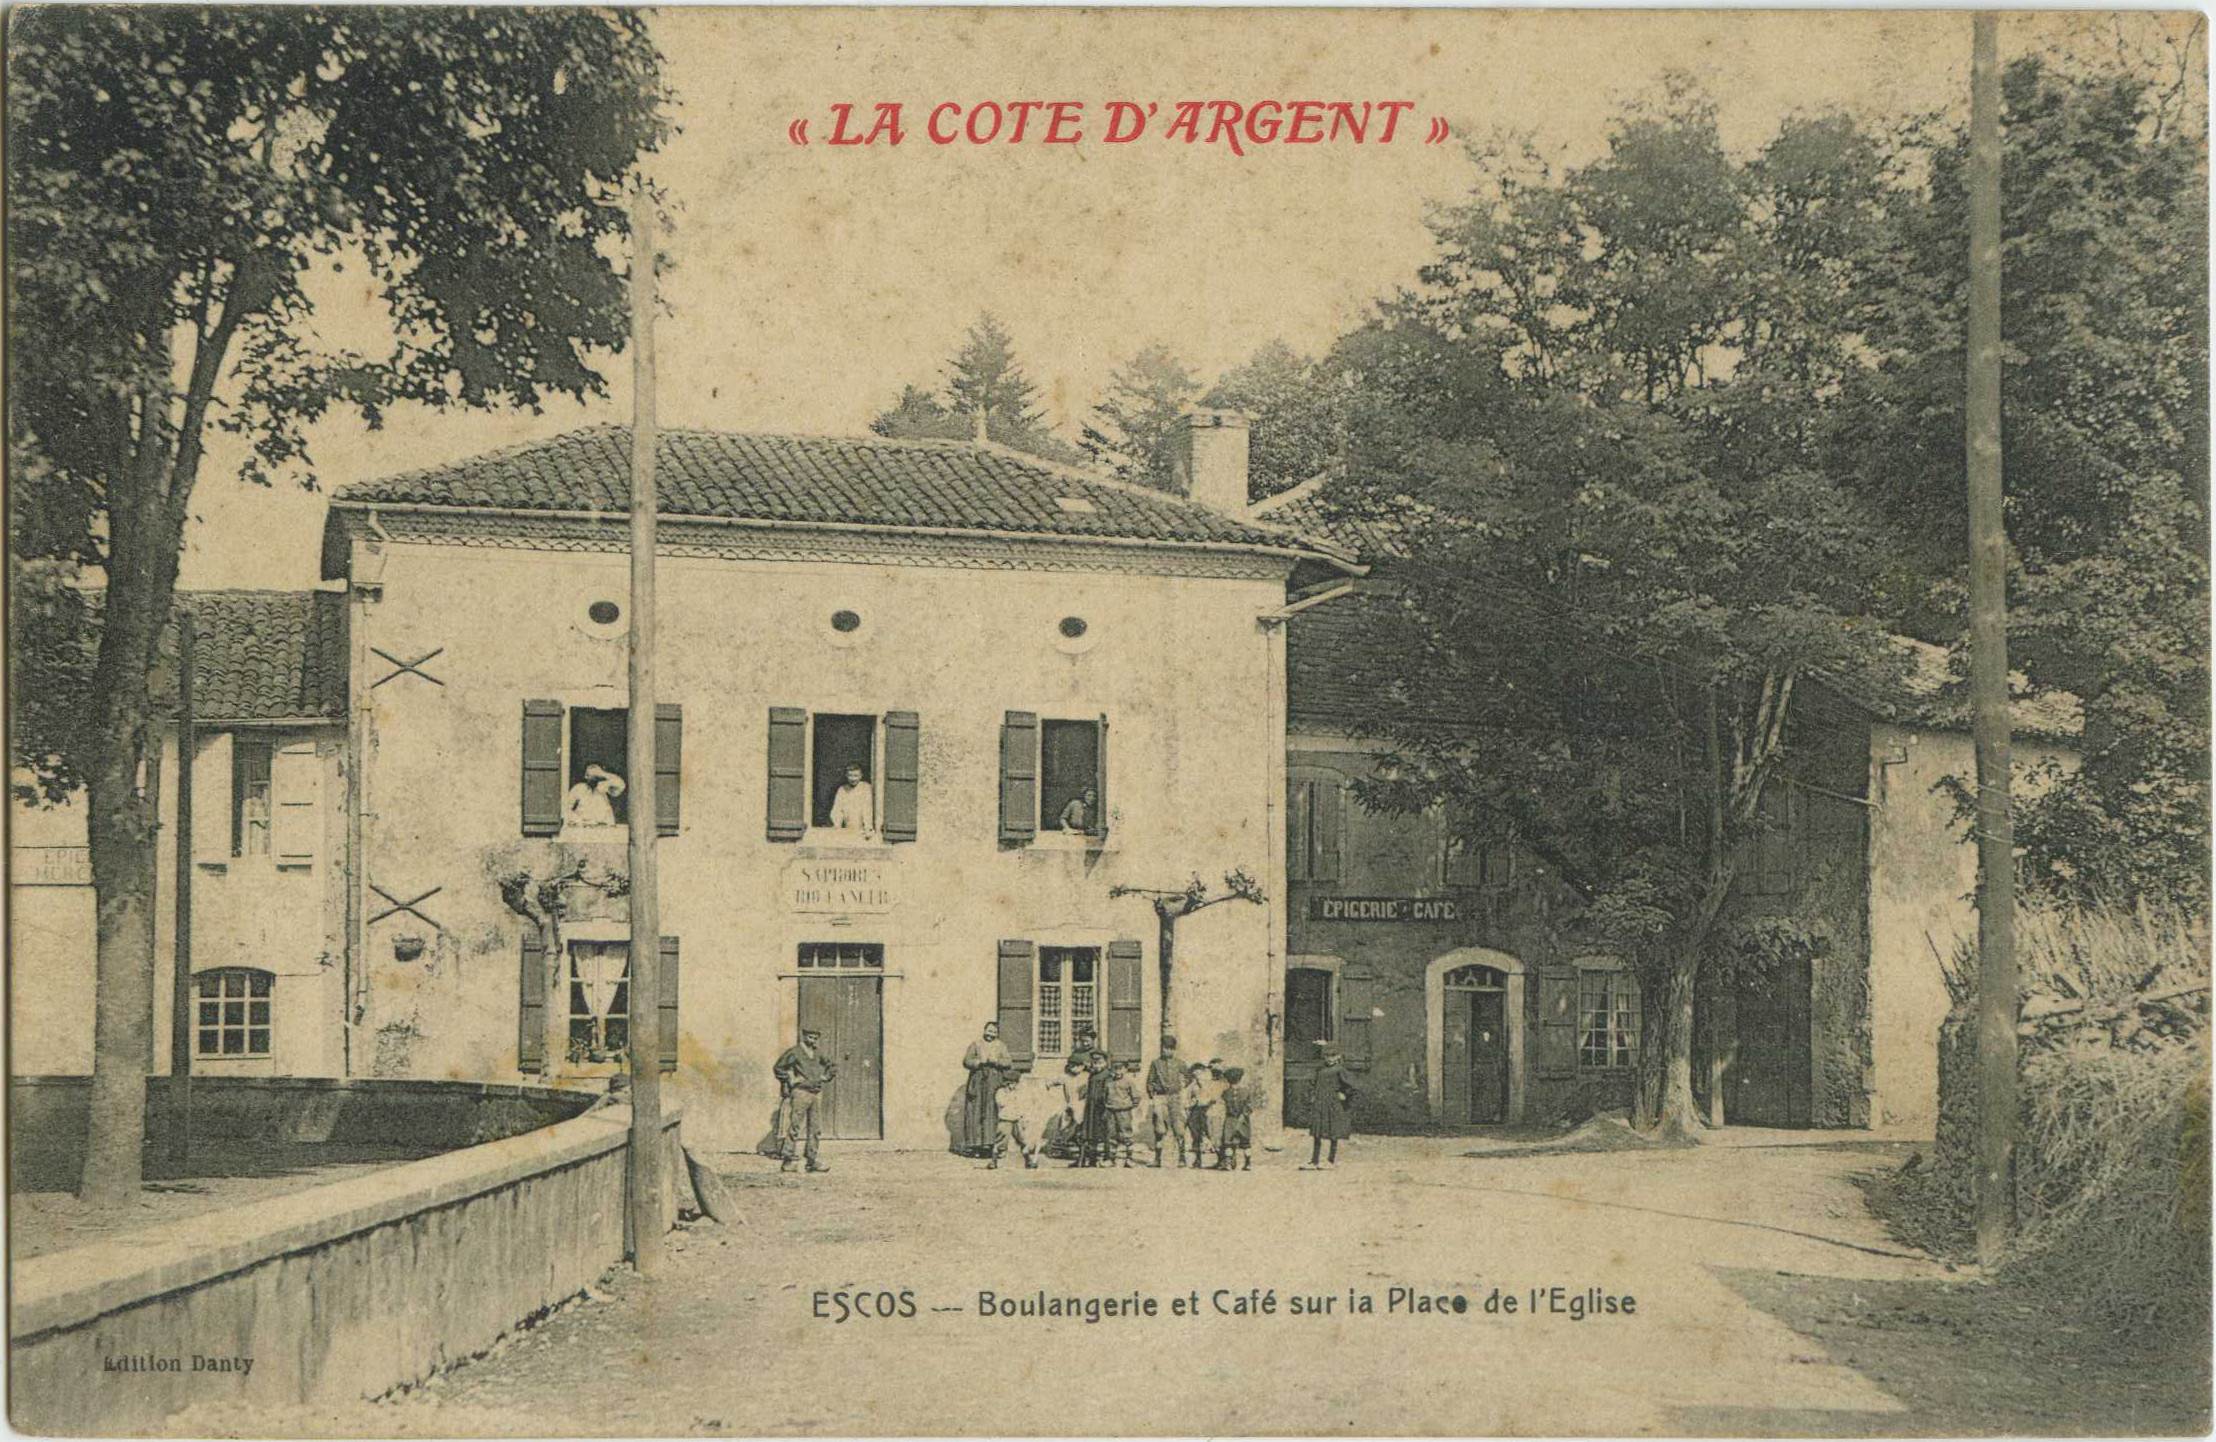 Escos - Boulangerie et Café sur la Place de l'Eglise